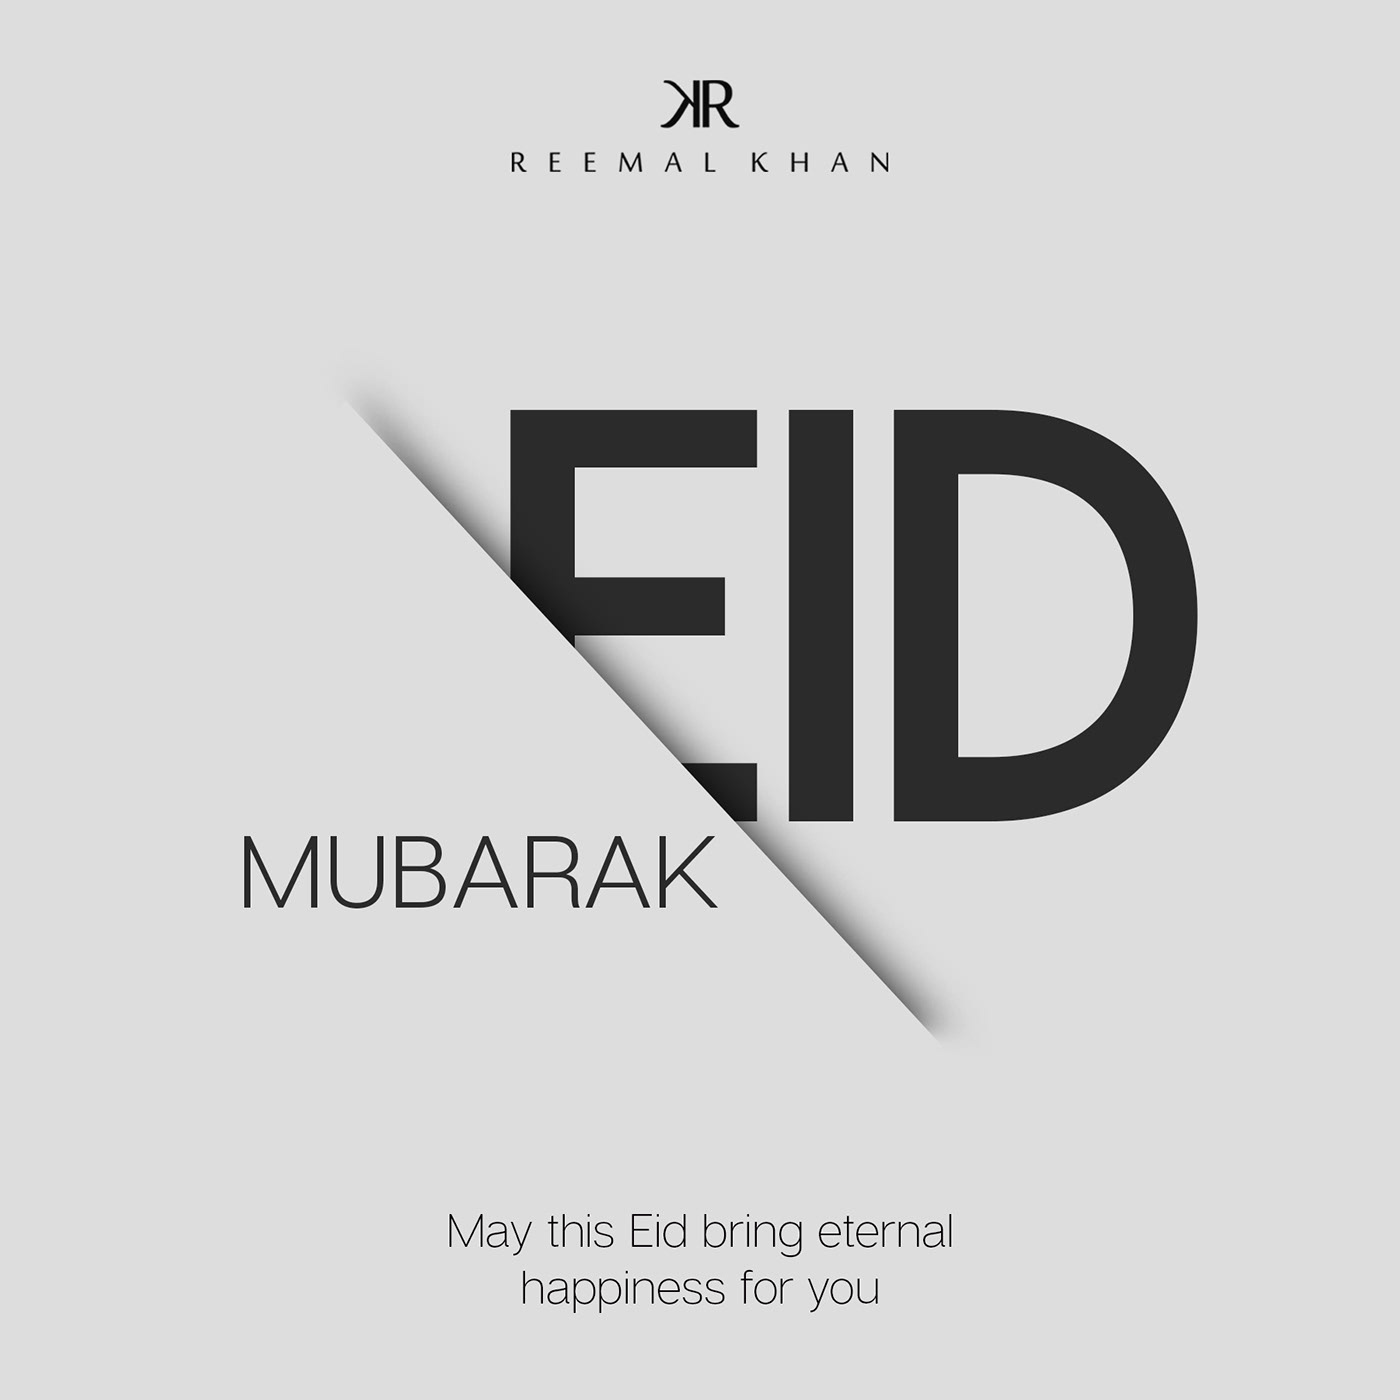 Eid EID UL ADHA clothing brand photoshop design creative